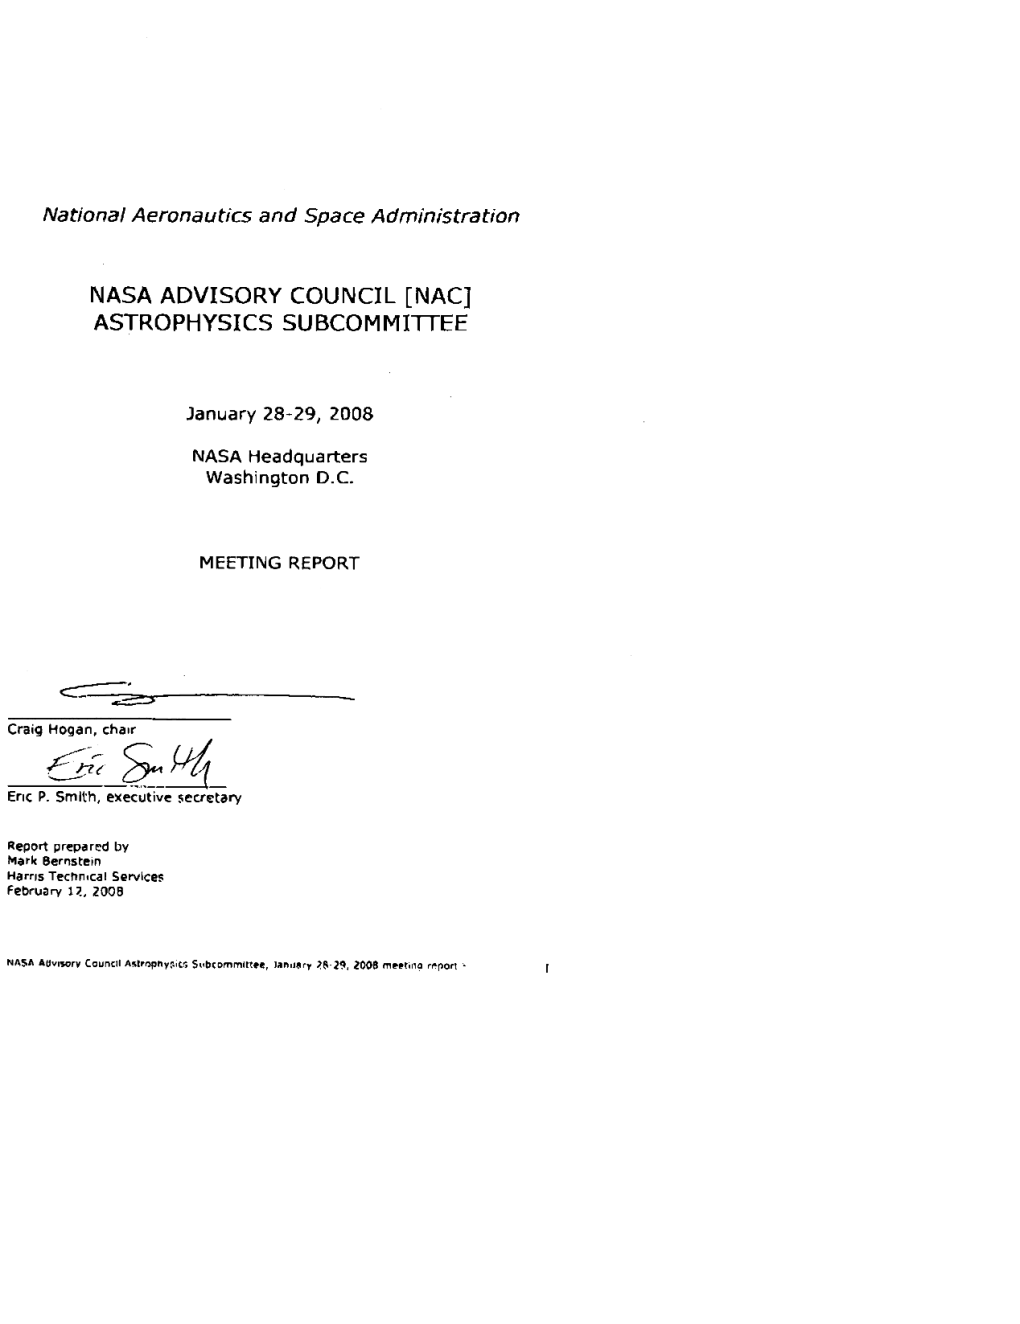 NASA Astrophysics Subcommittee January 2008 Minutes